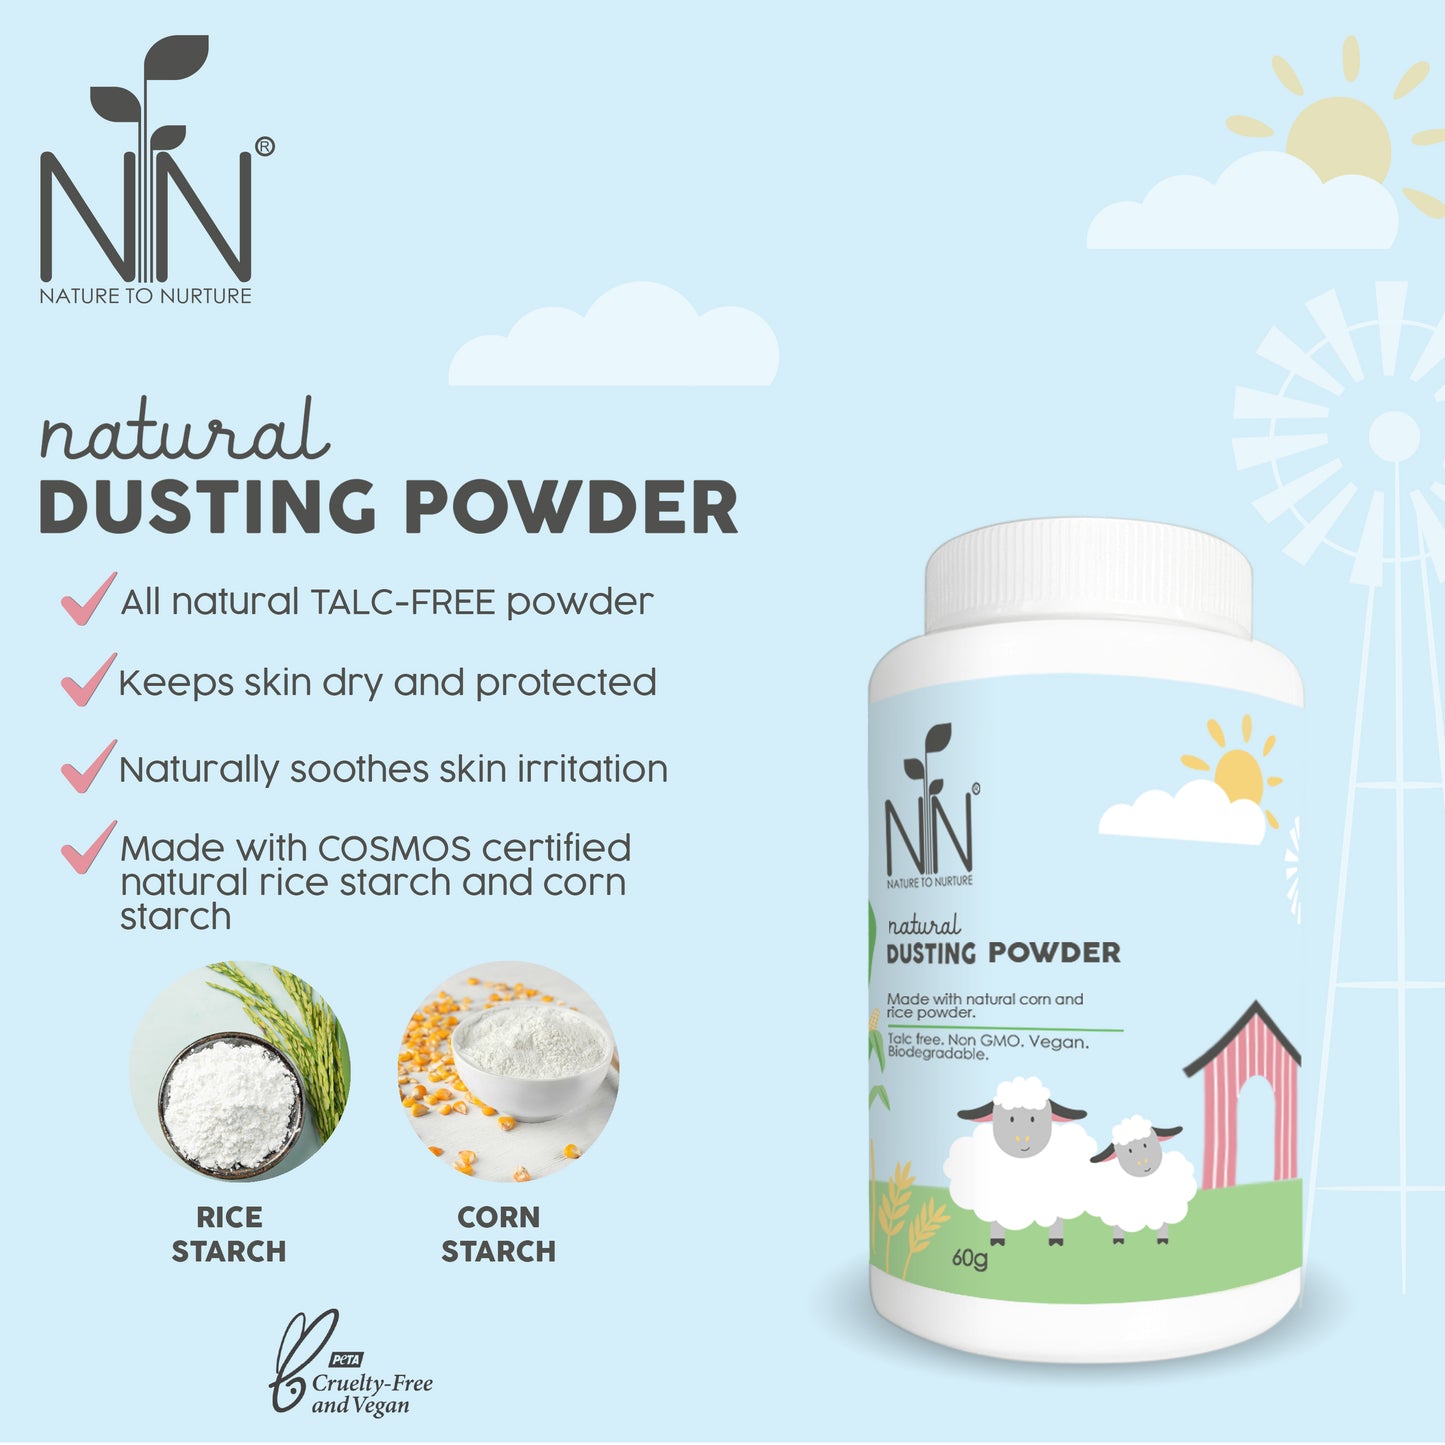 Nature to Nurture Natural Dusting Powder (60g)